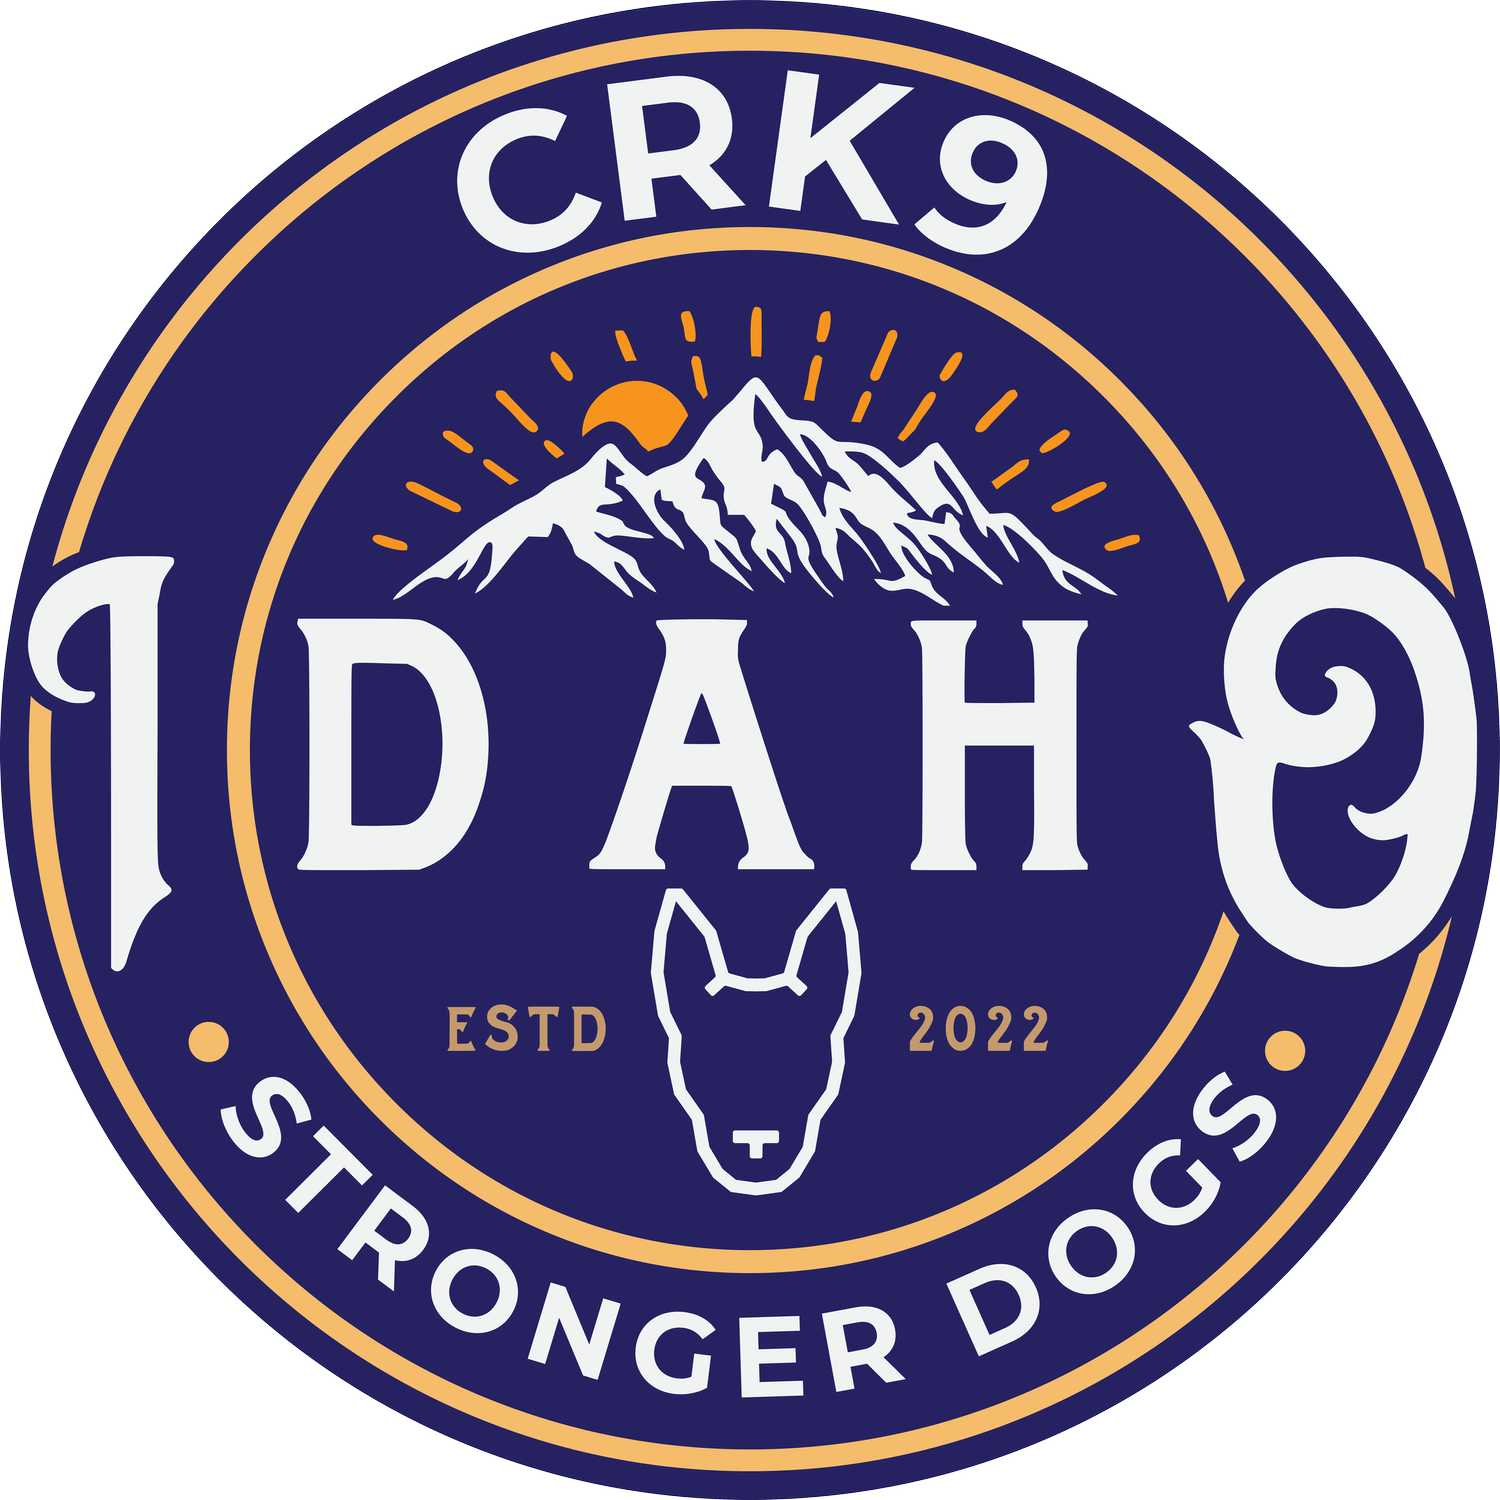 CRK9 IDAHO - DOG TRAINING